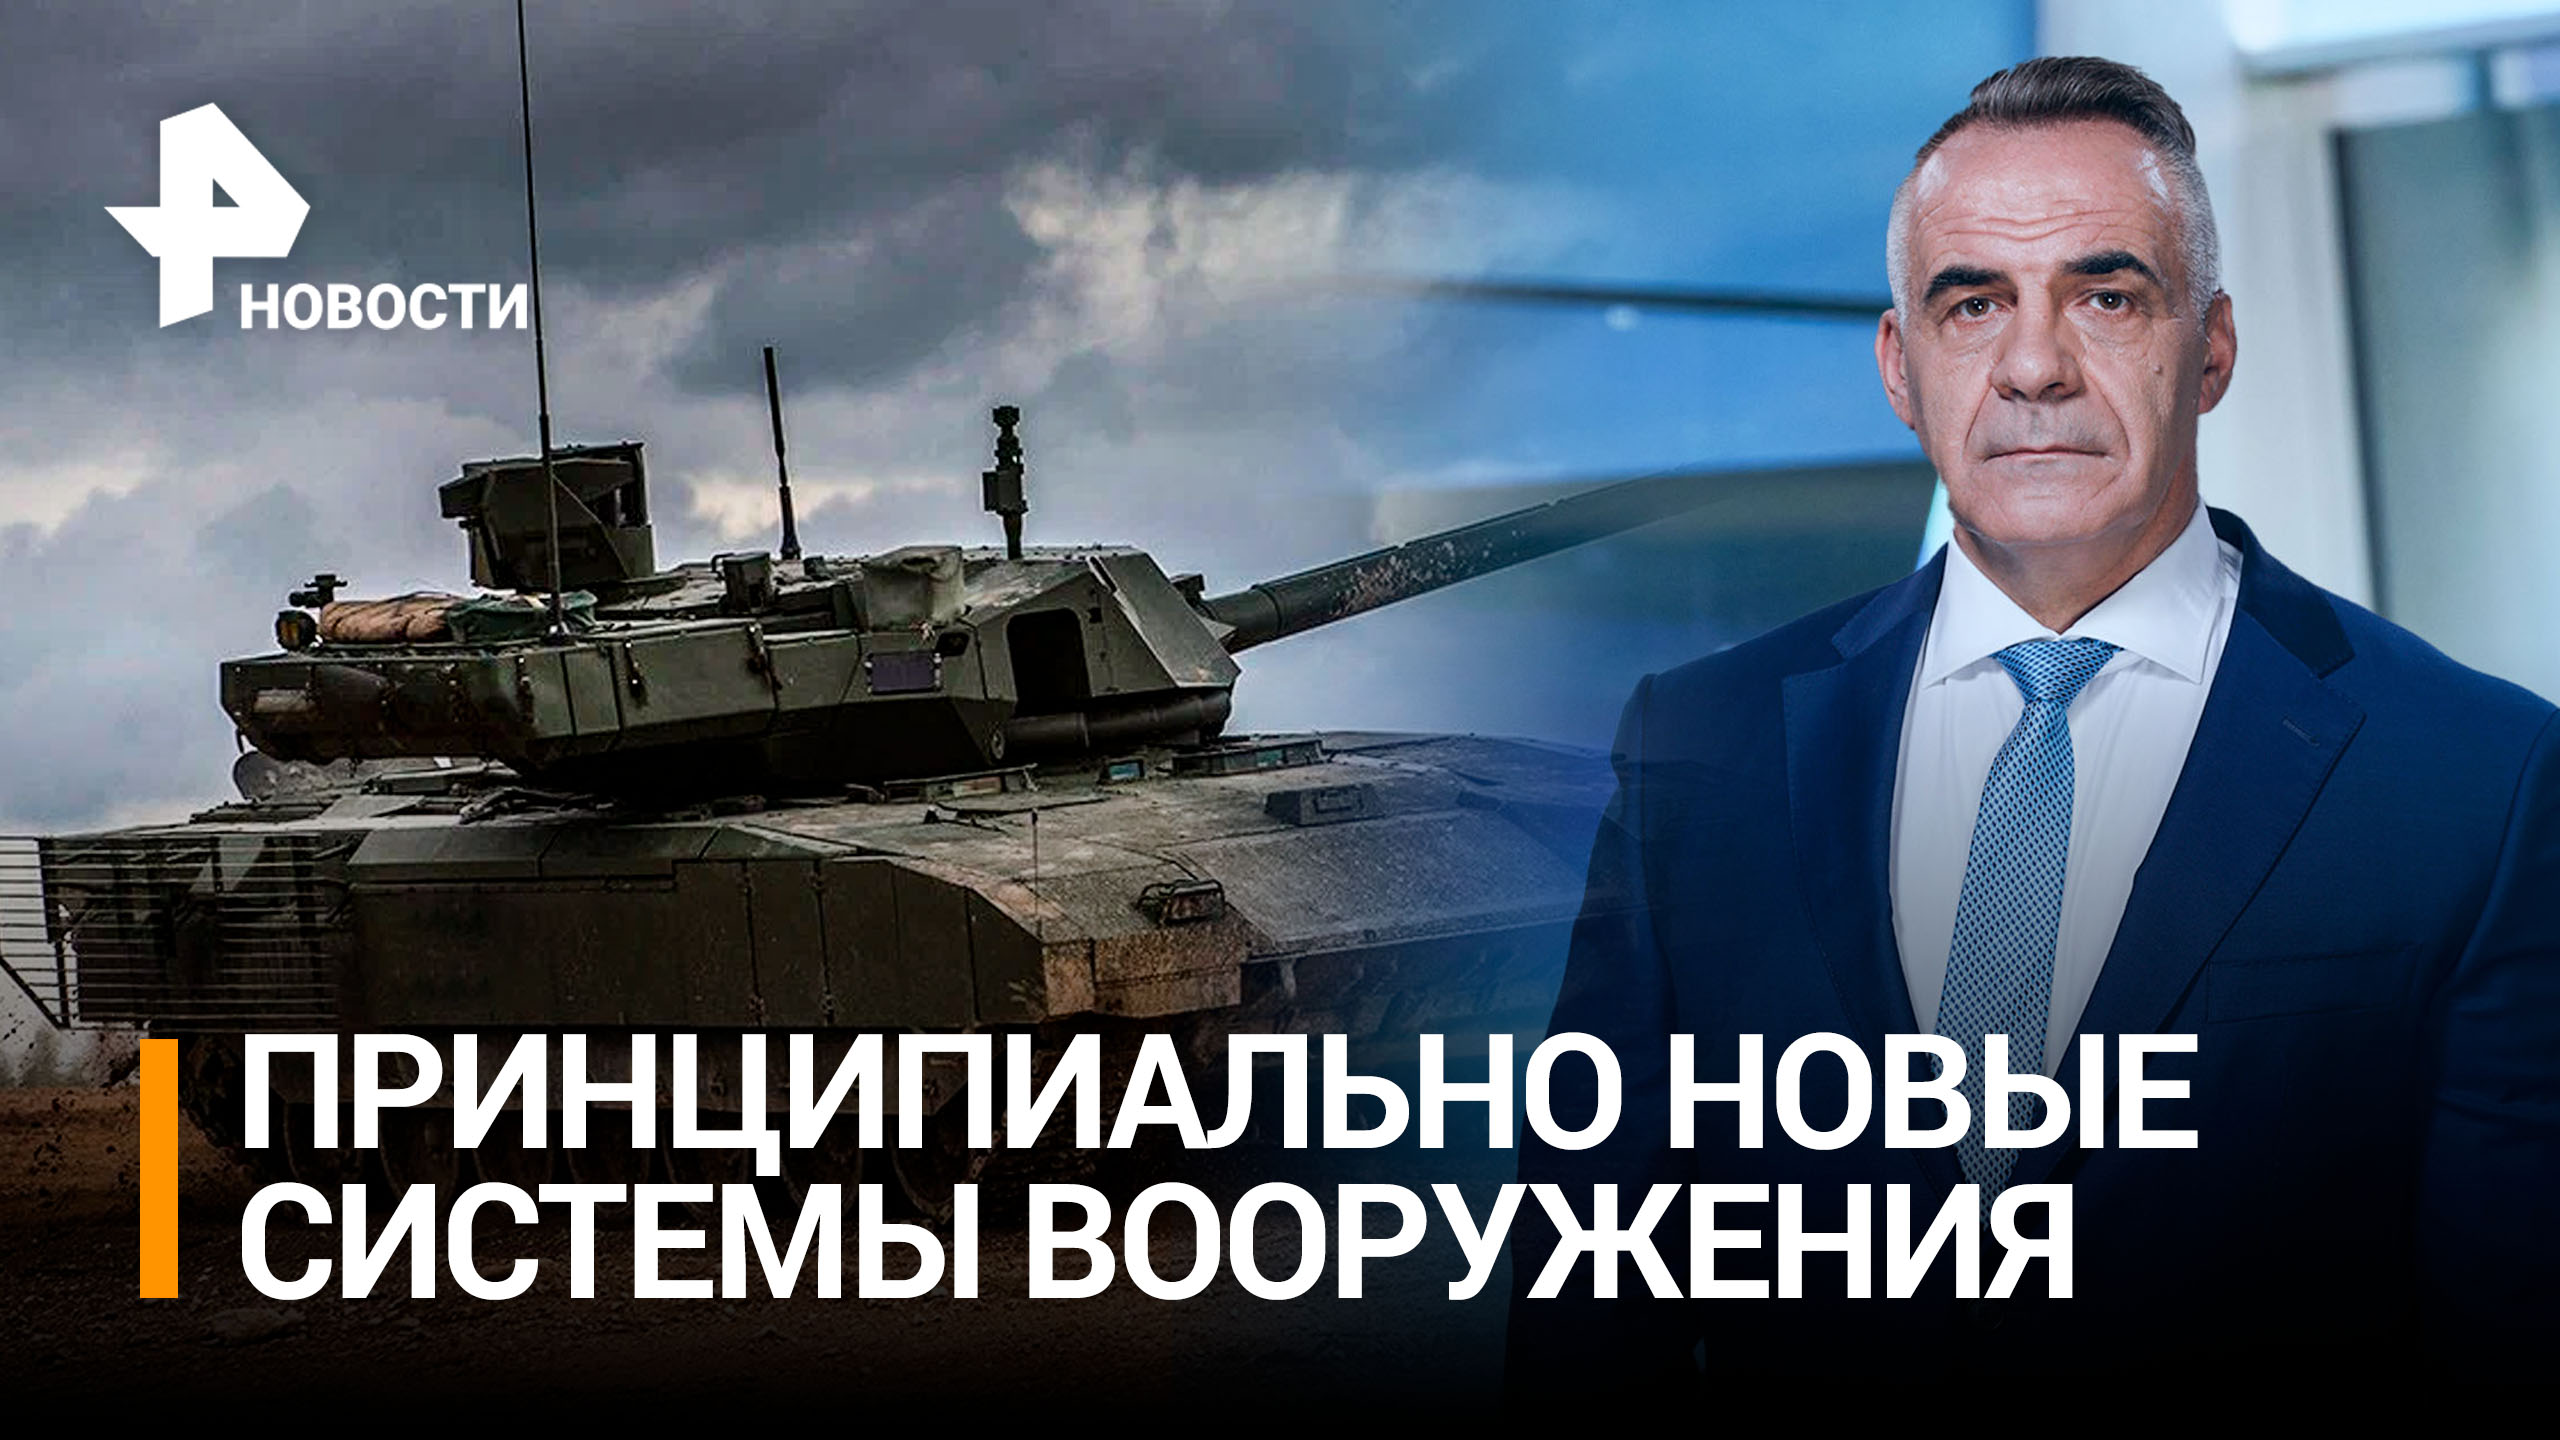 Военная трансформация: как ОПК работает на российскую армию / РЕН Новости